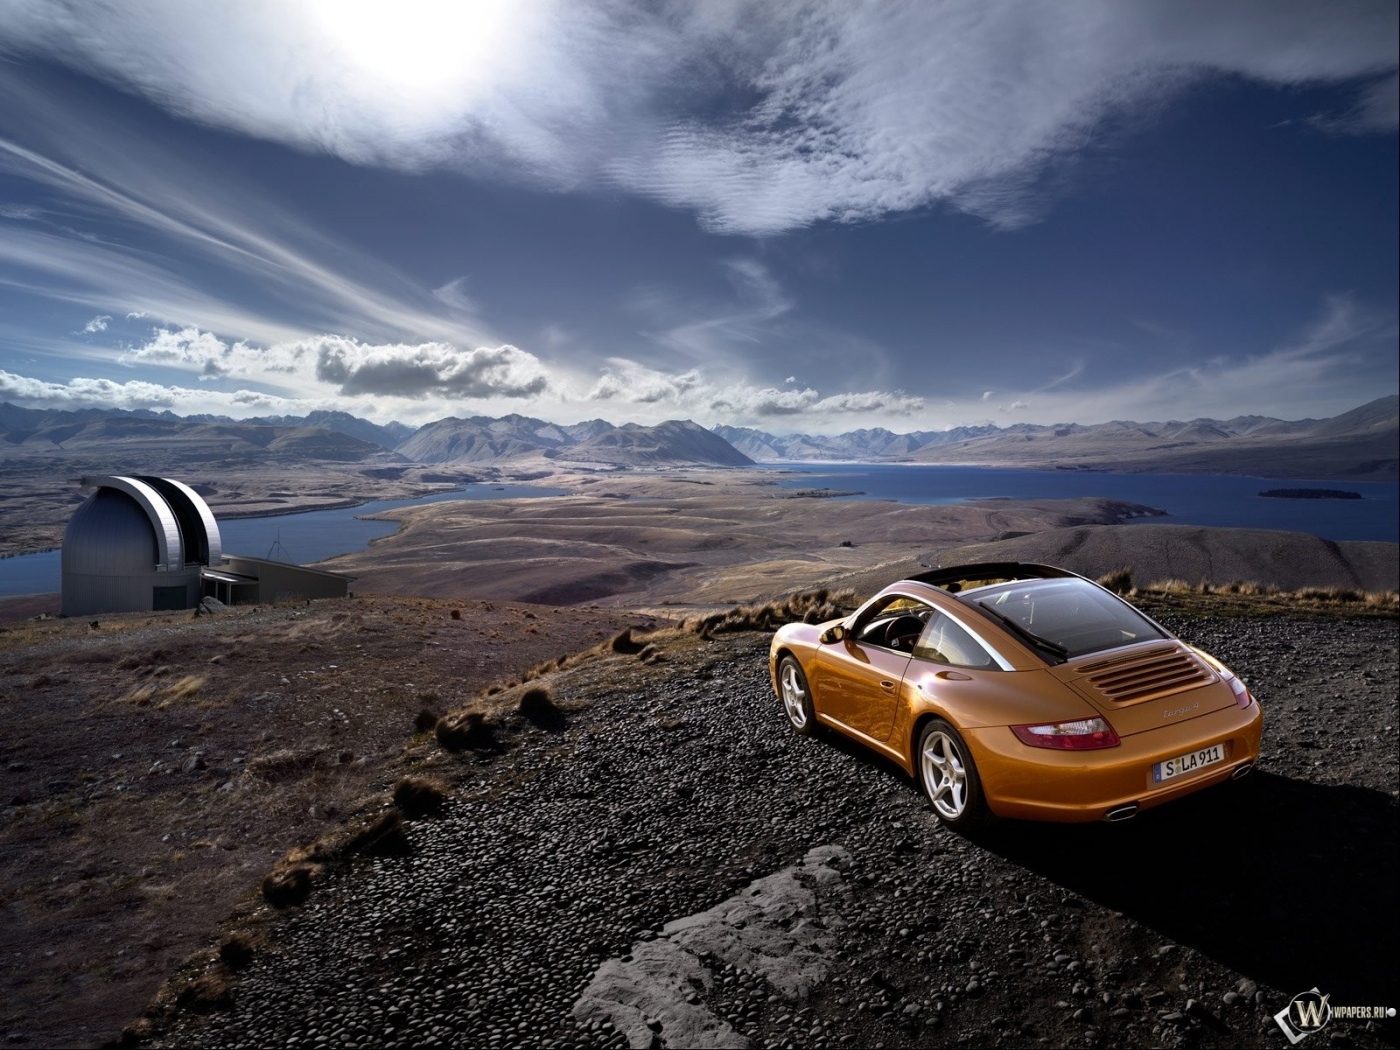 Скачать обои бесплатно Облака, Небо, Транспорт, Горы, Машины, Пейзаж, Порш (Porsche) картинка на рабочий стол ПК